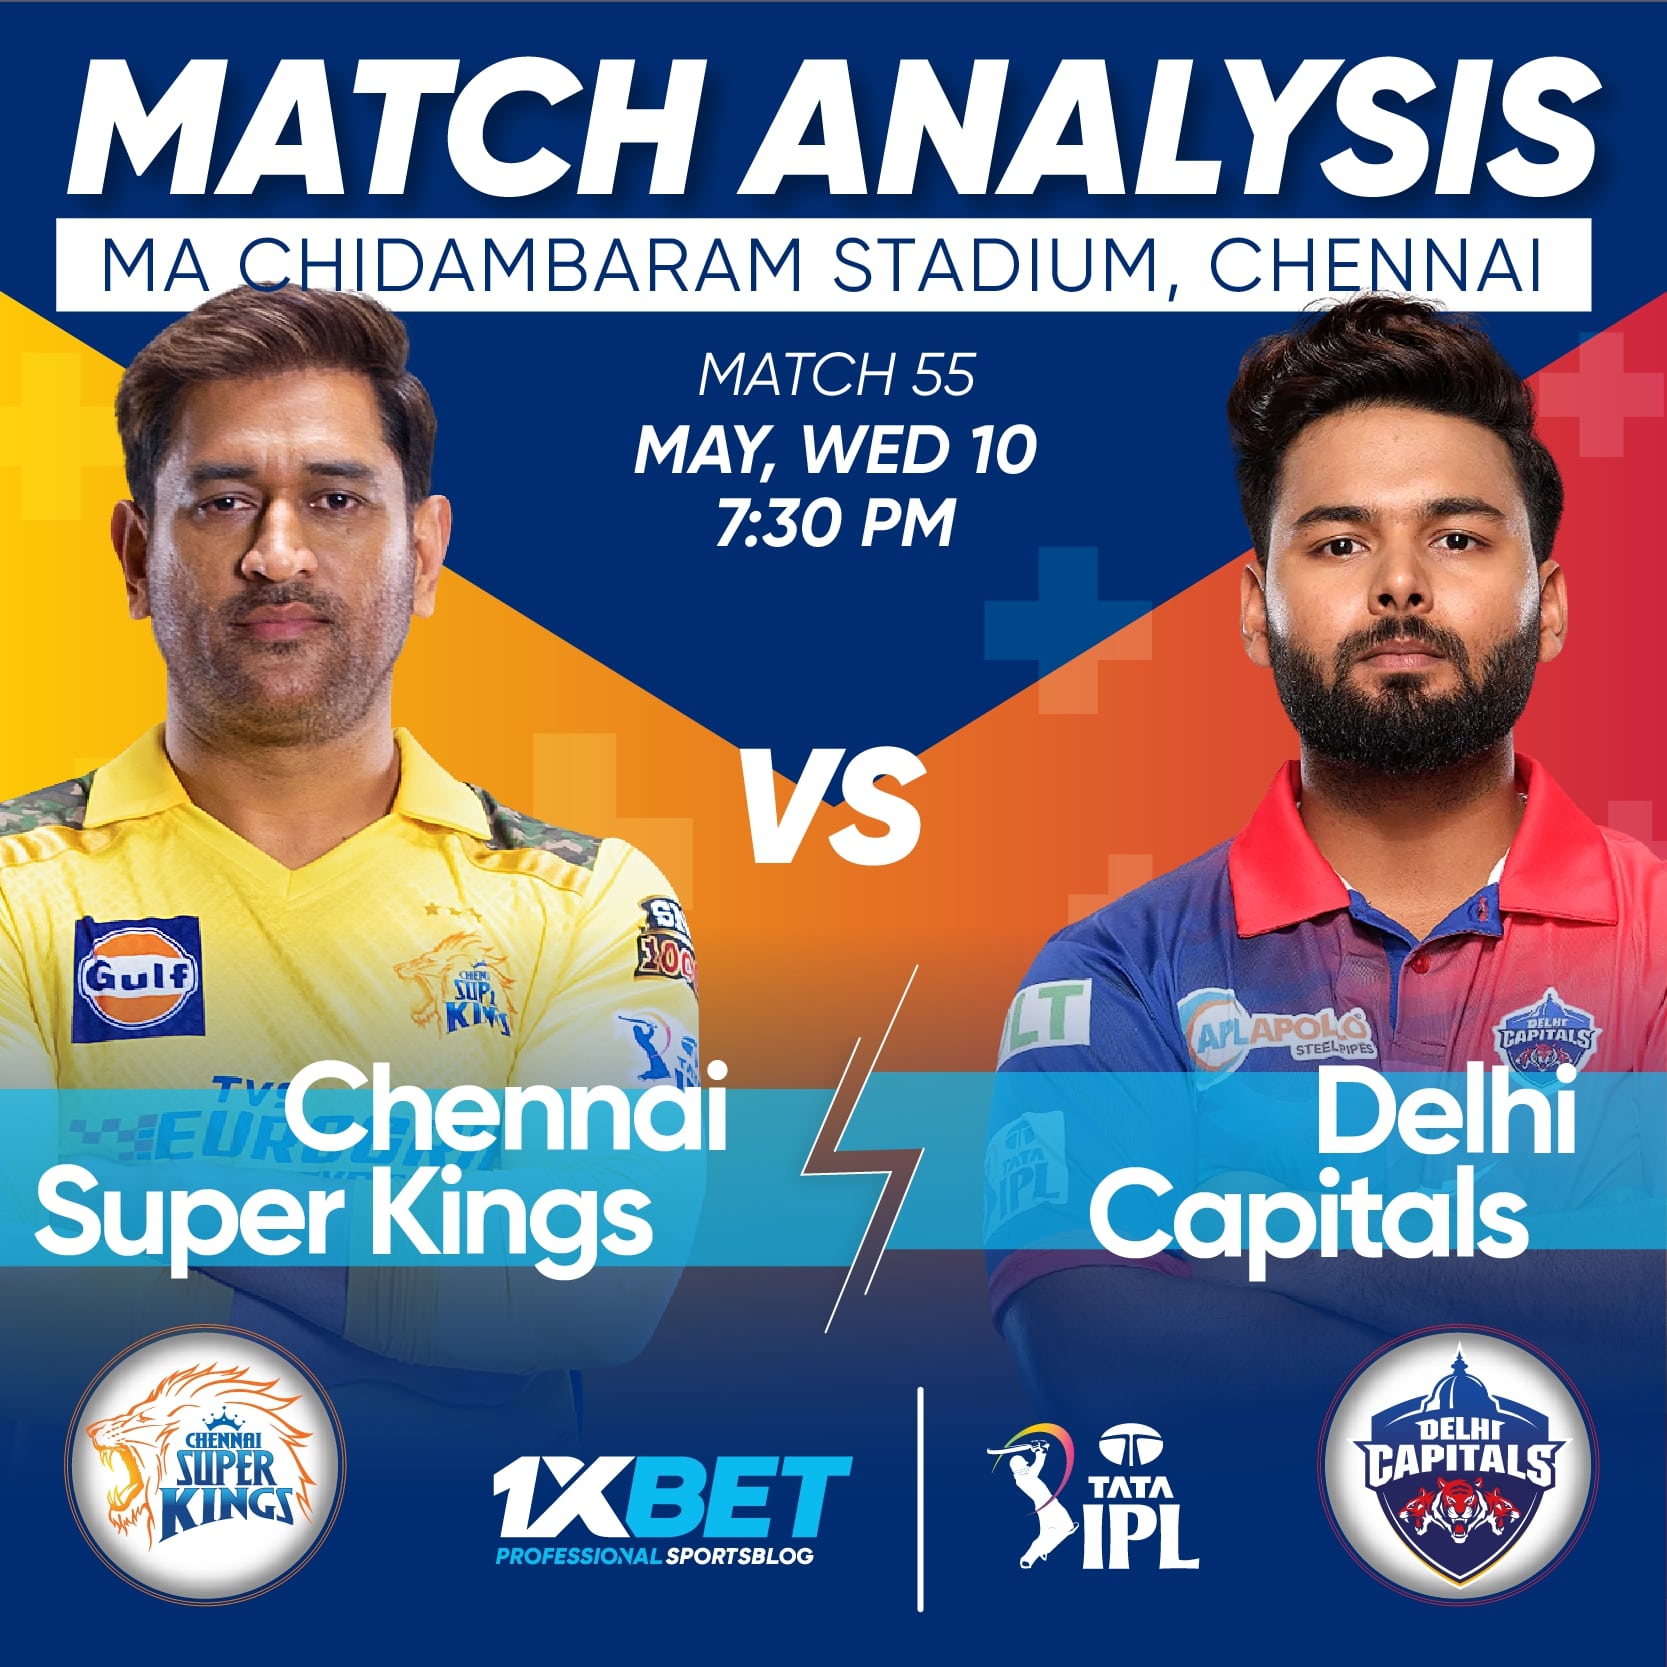 Chennai Super Kings vs Delhi Capitals, IPL 2023, 55th Match Analysis